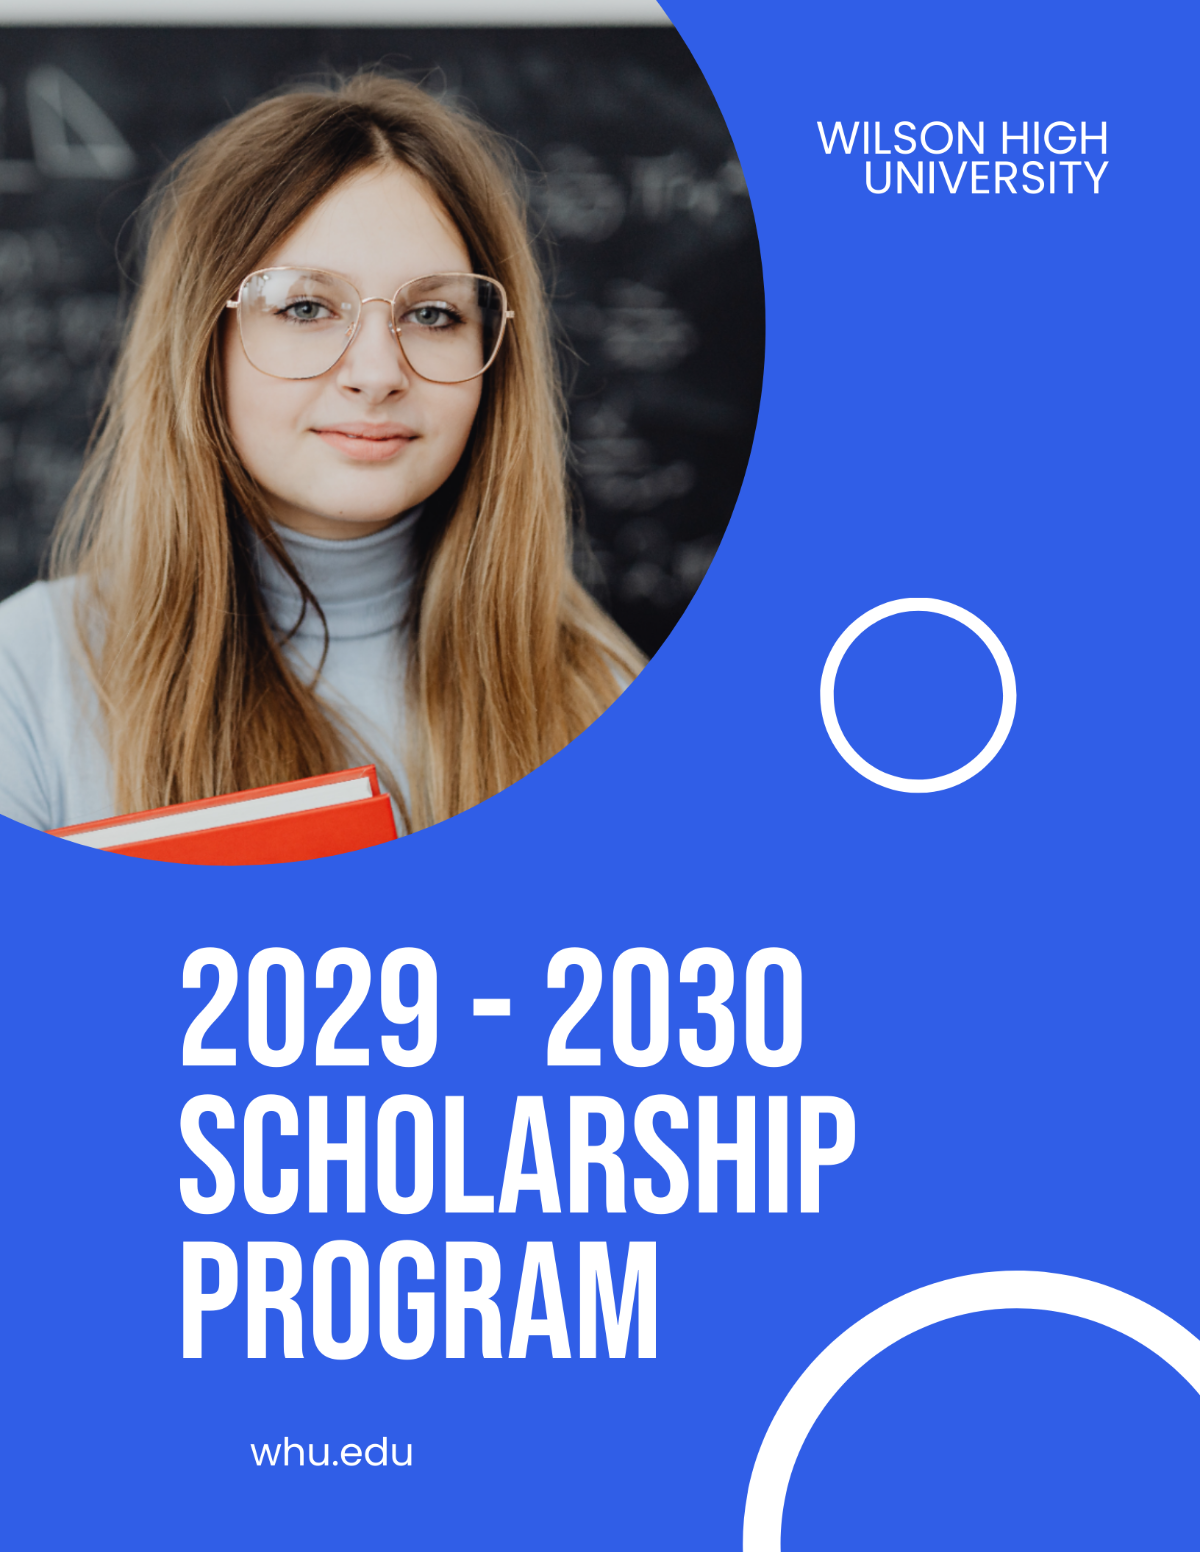 University Scholarship Program Flyer